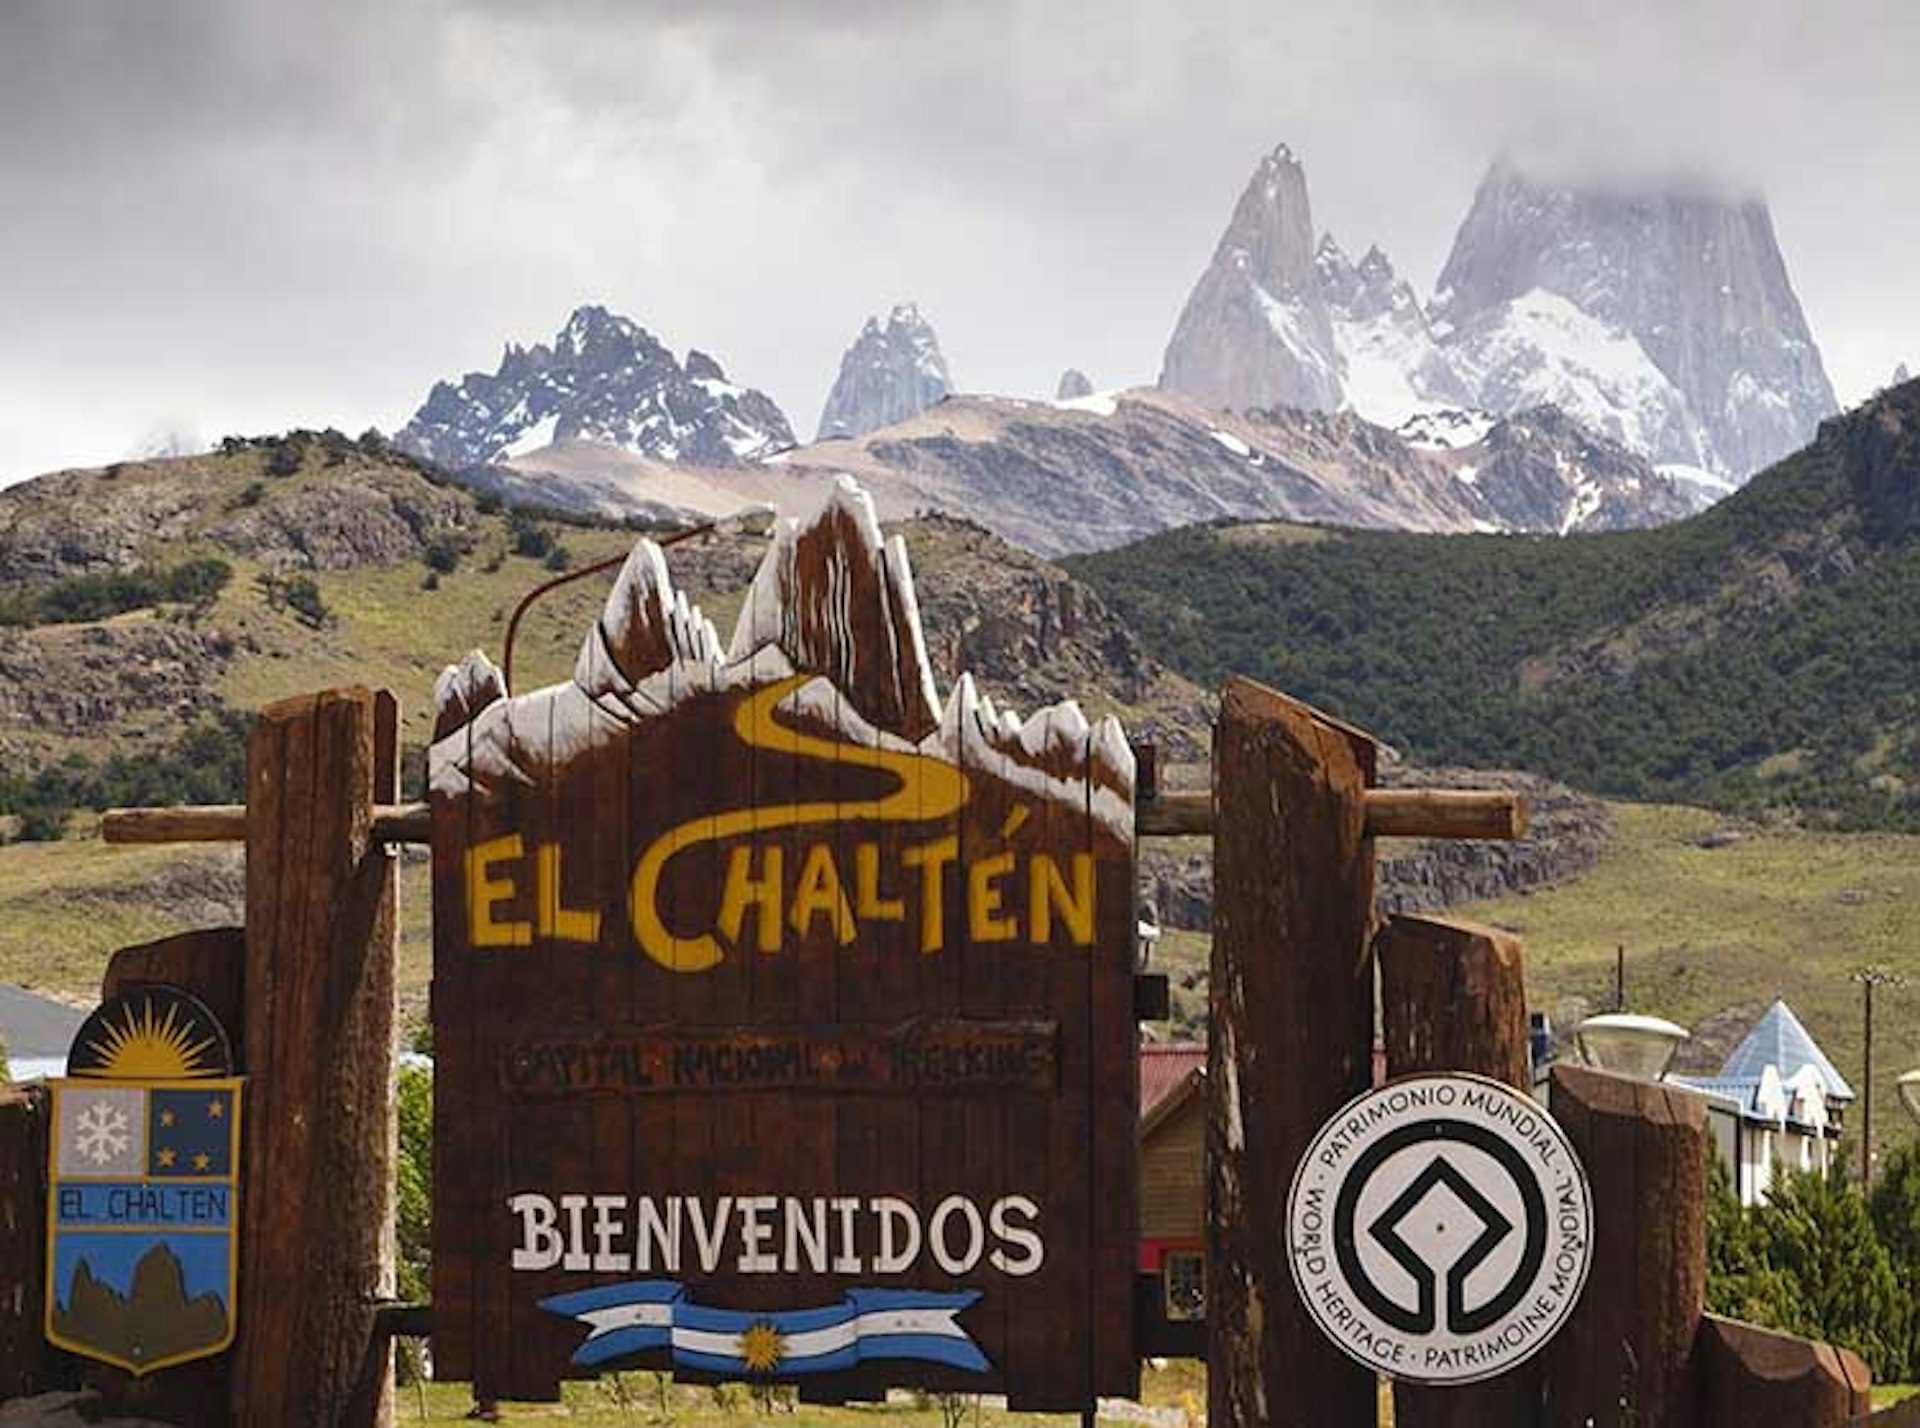 El Chaltén / Image by Steve Waters